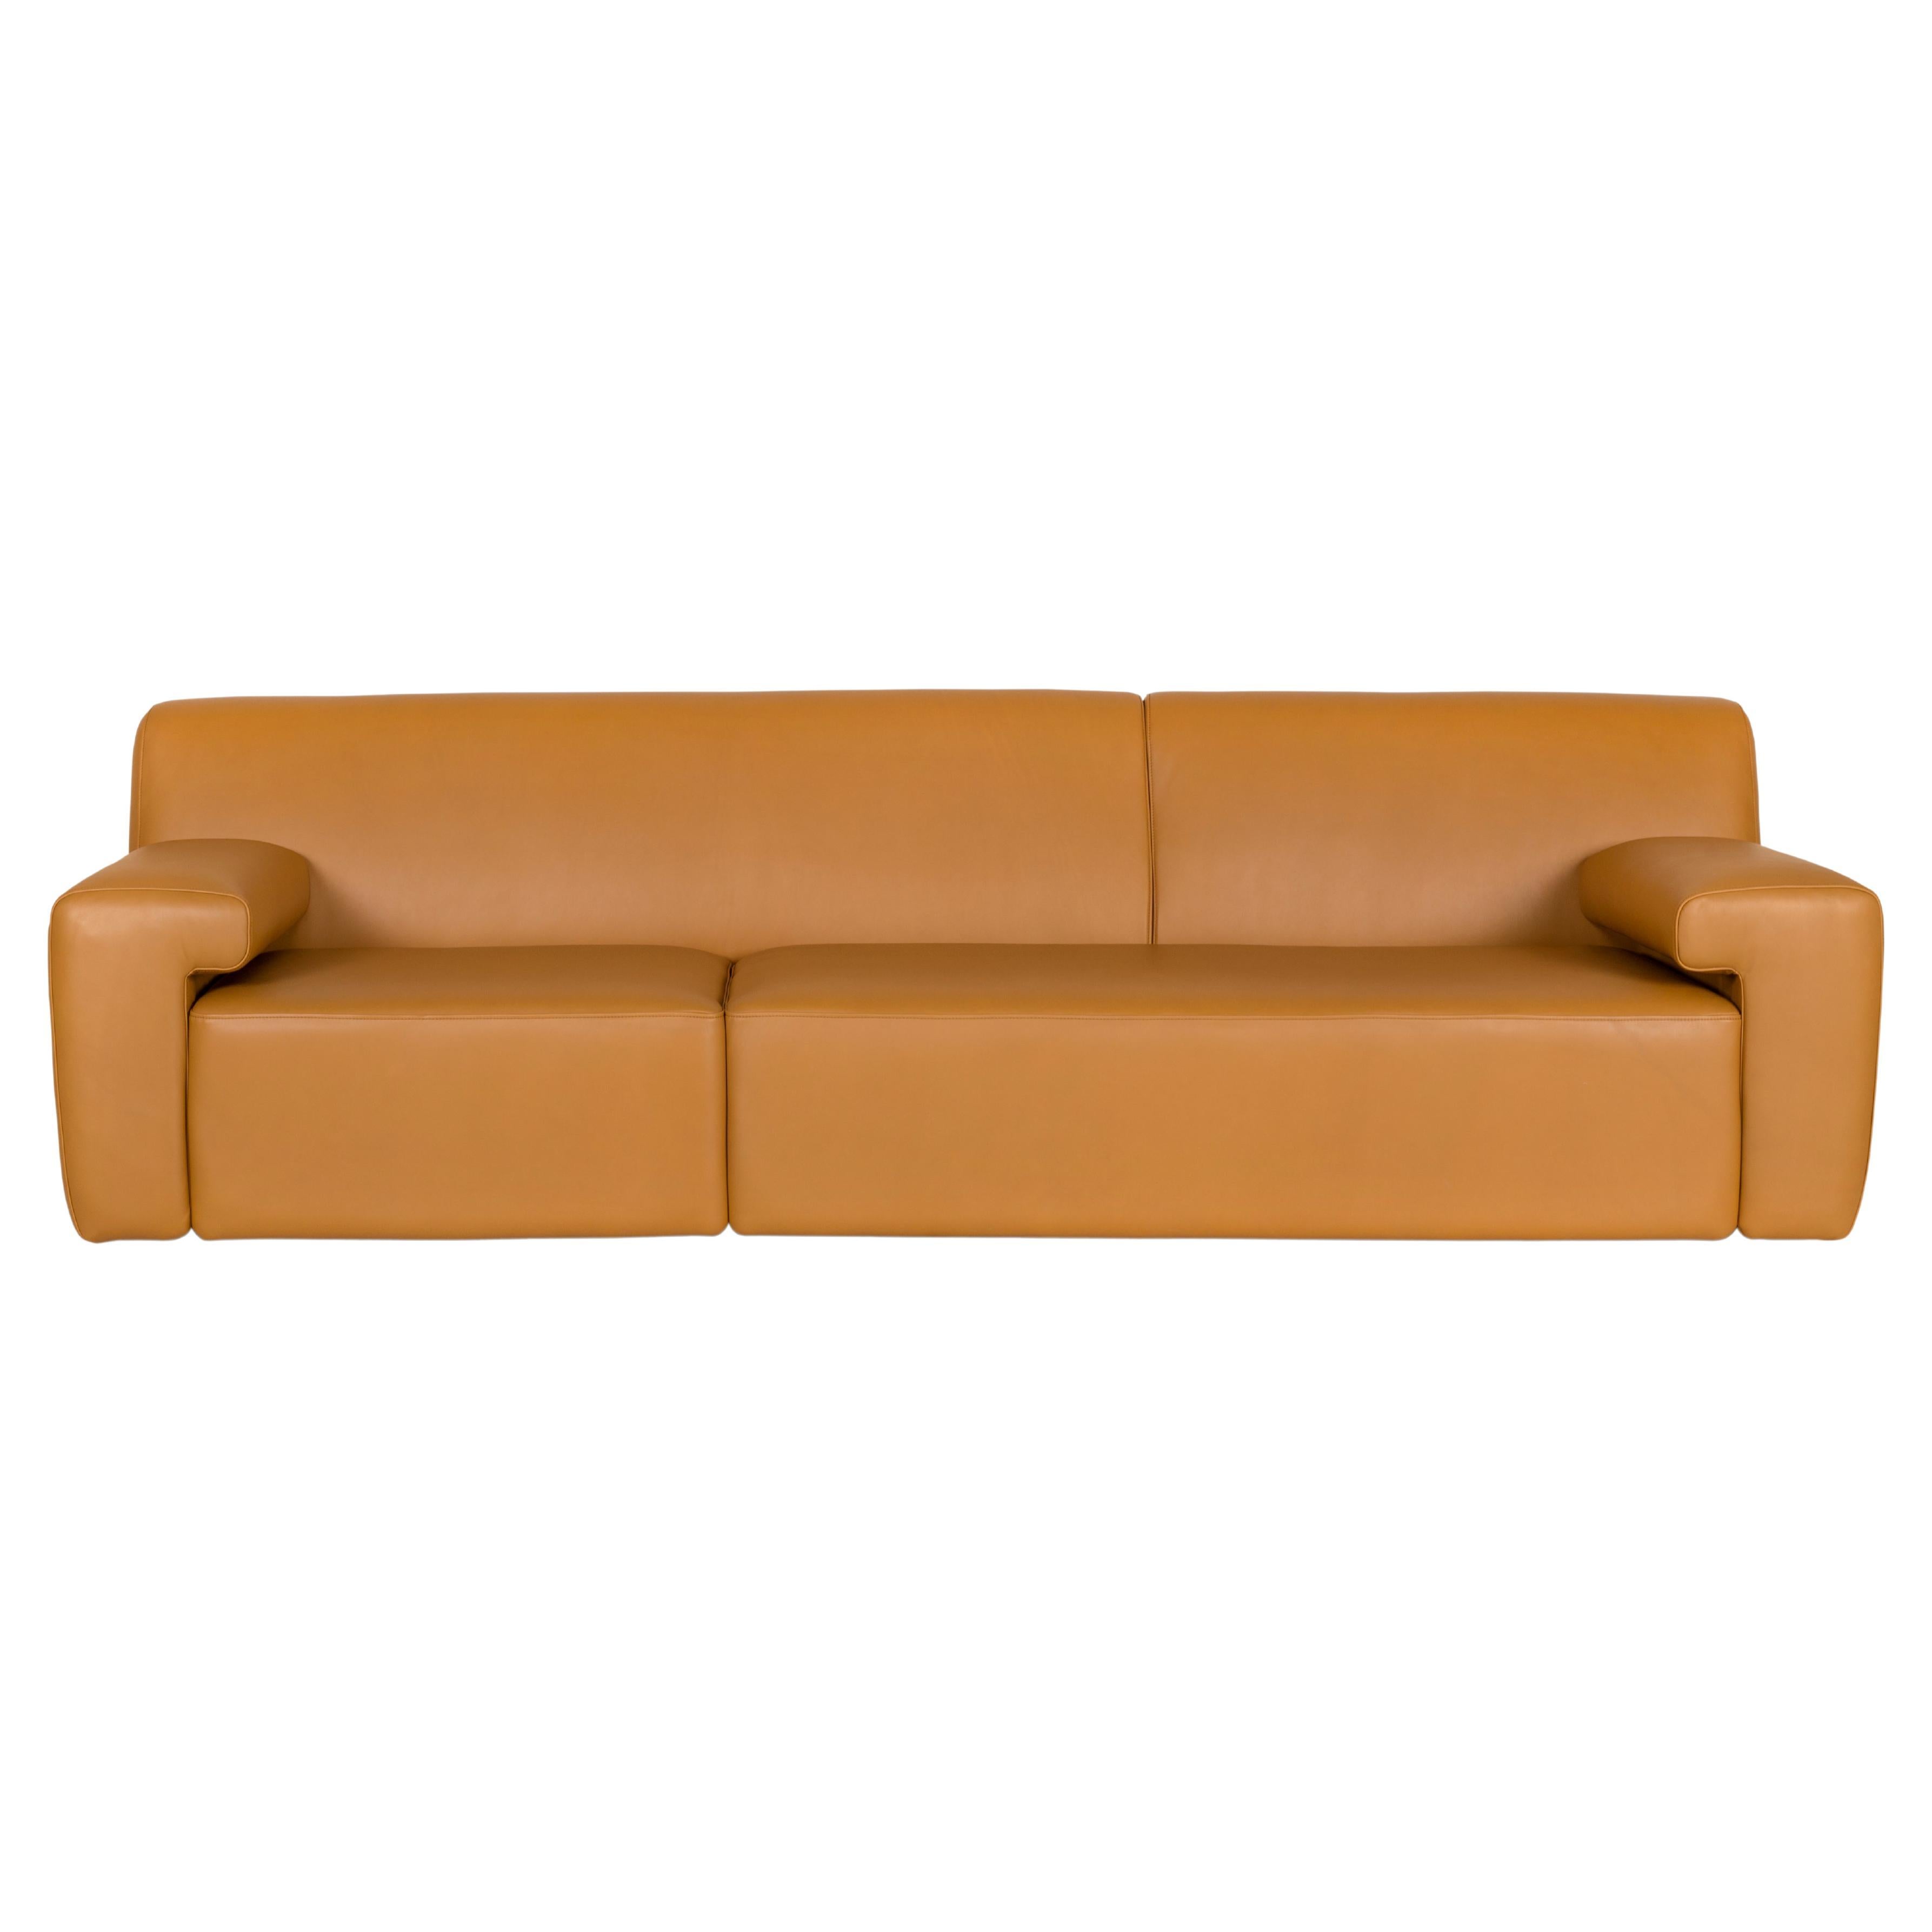 Modernes Almourol-Sofa, Kamelfarbenes italienisches Leder, handgefertigt in Portugal von Greenapple